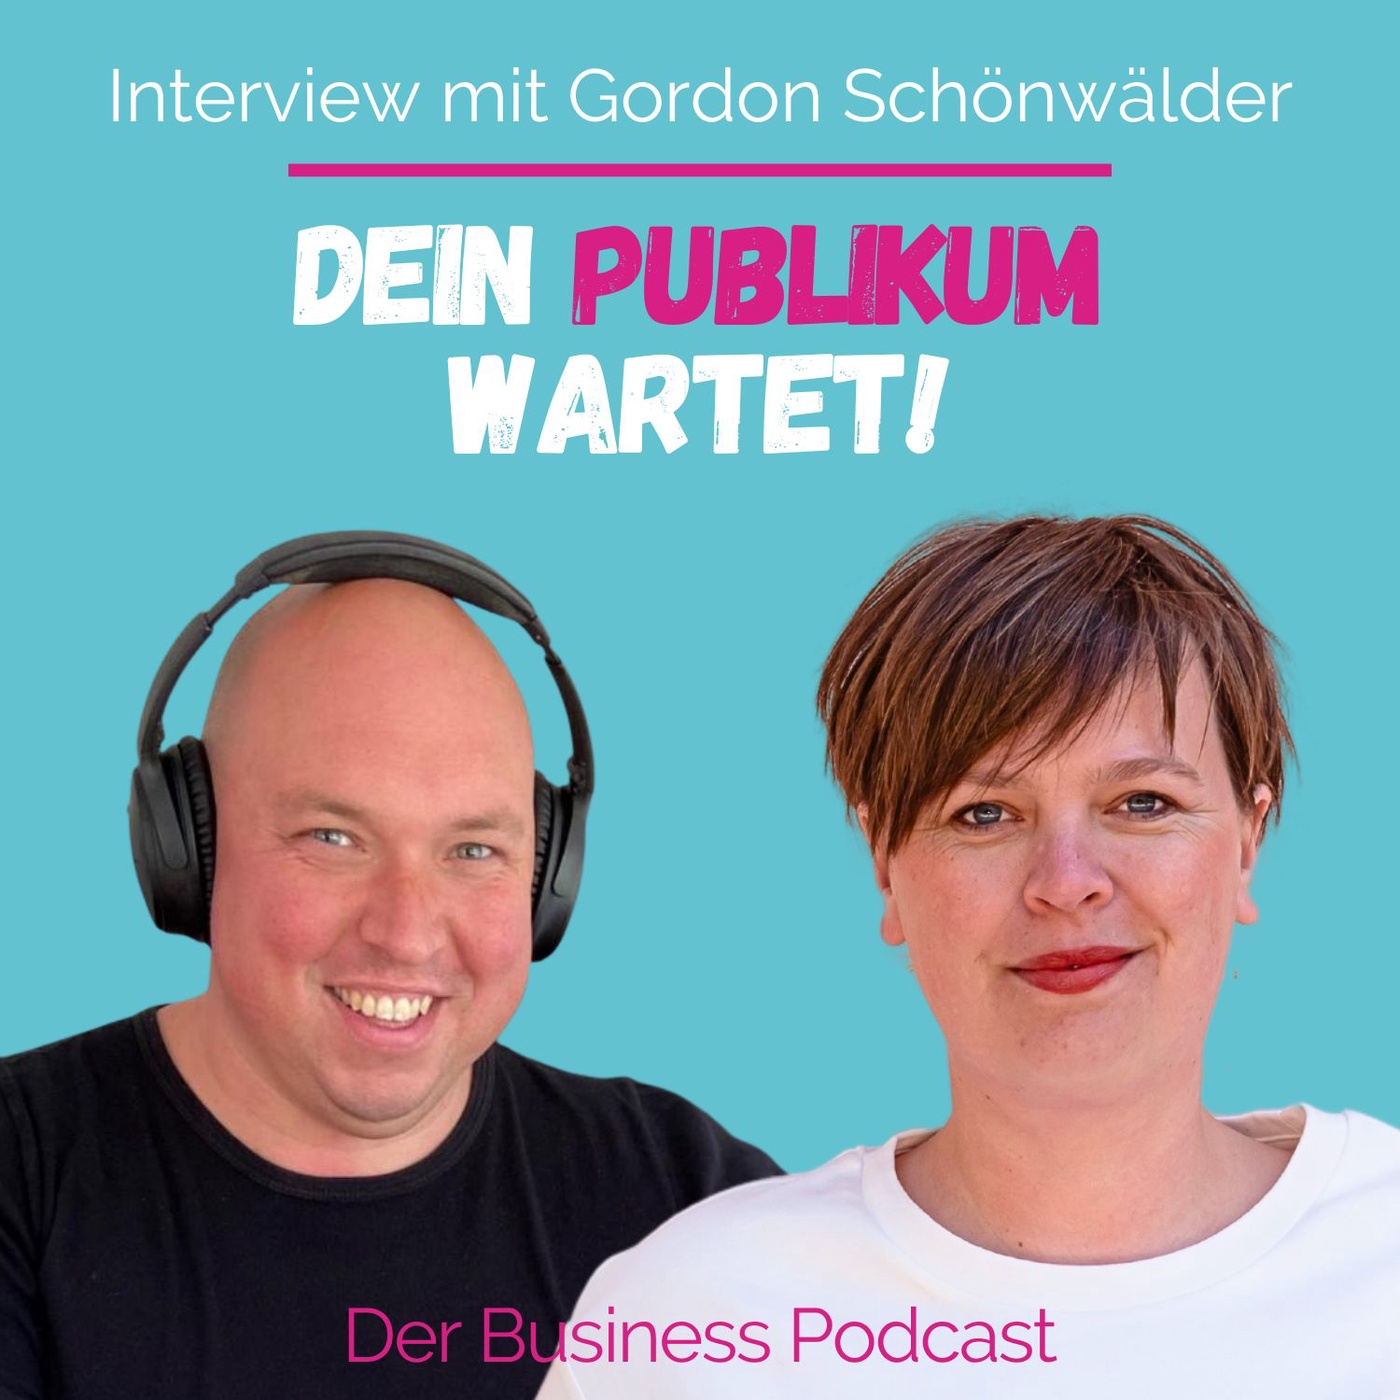 Interview mit Gordon Schönwälder. Über Podcast-Start, Wachstum und persönliche Resilienz. (#427)